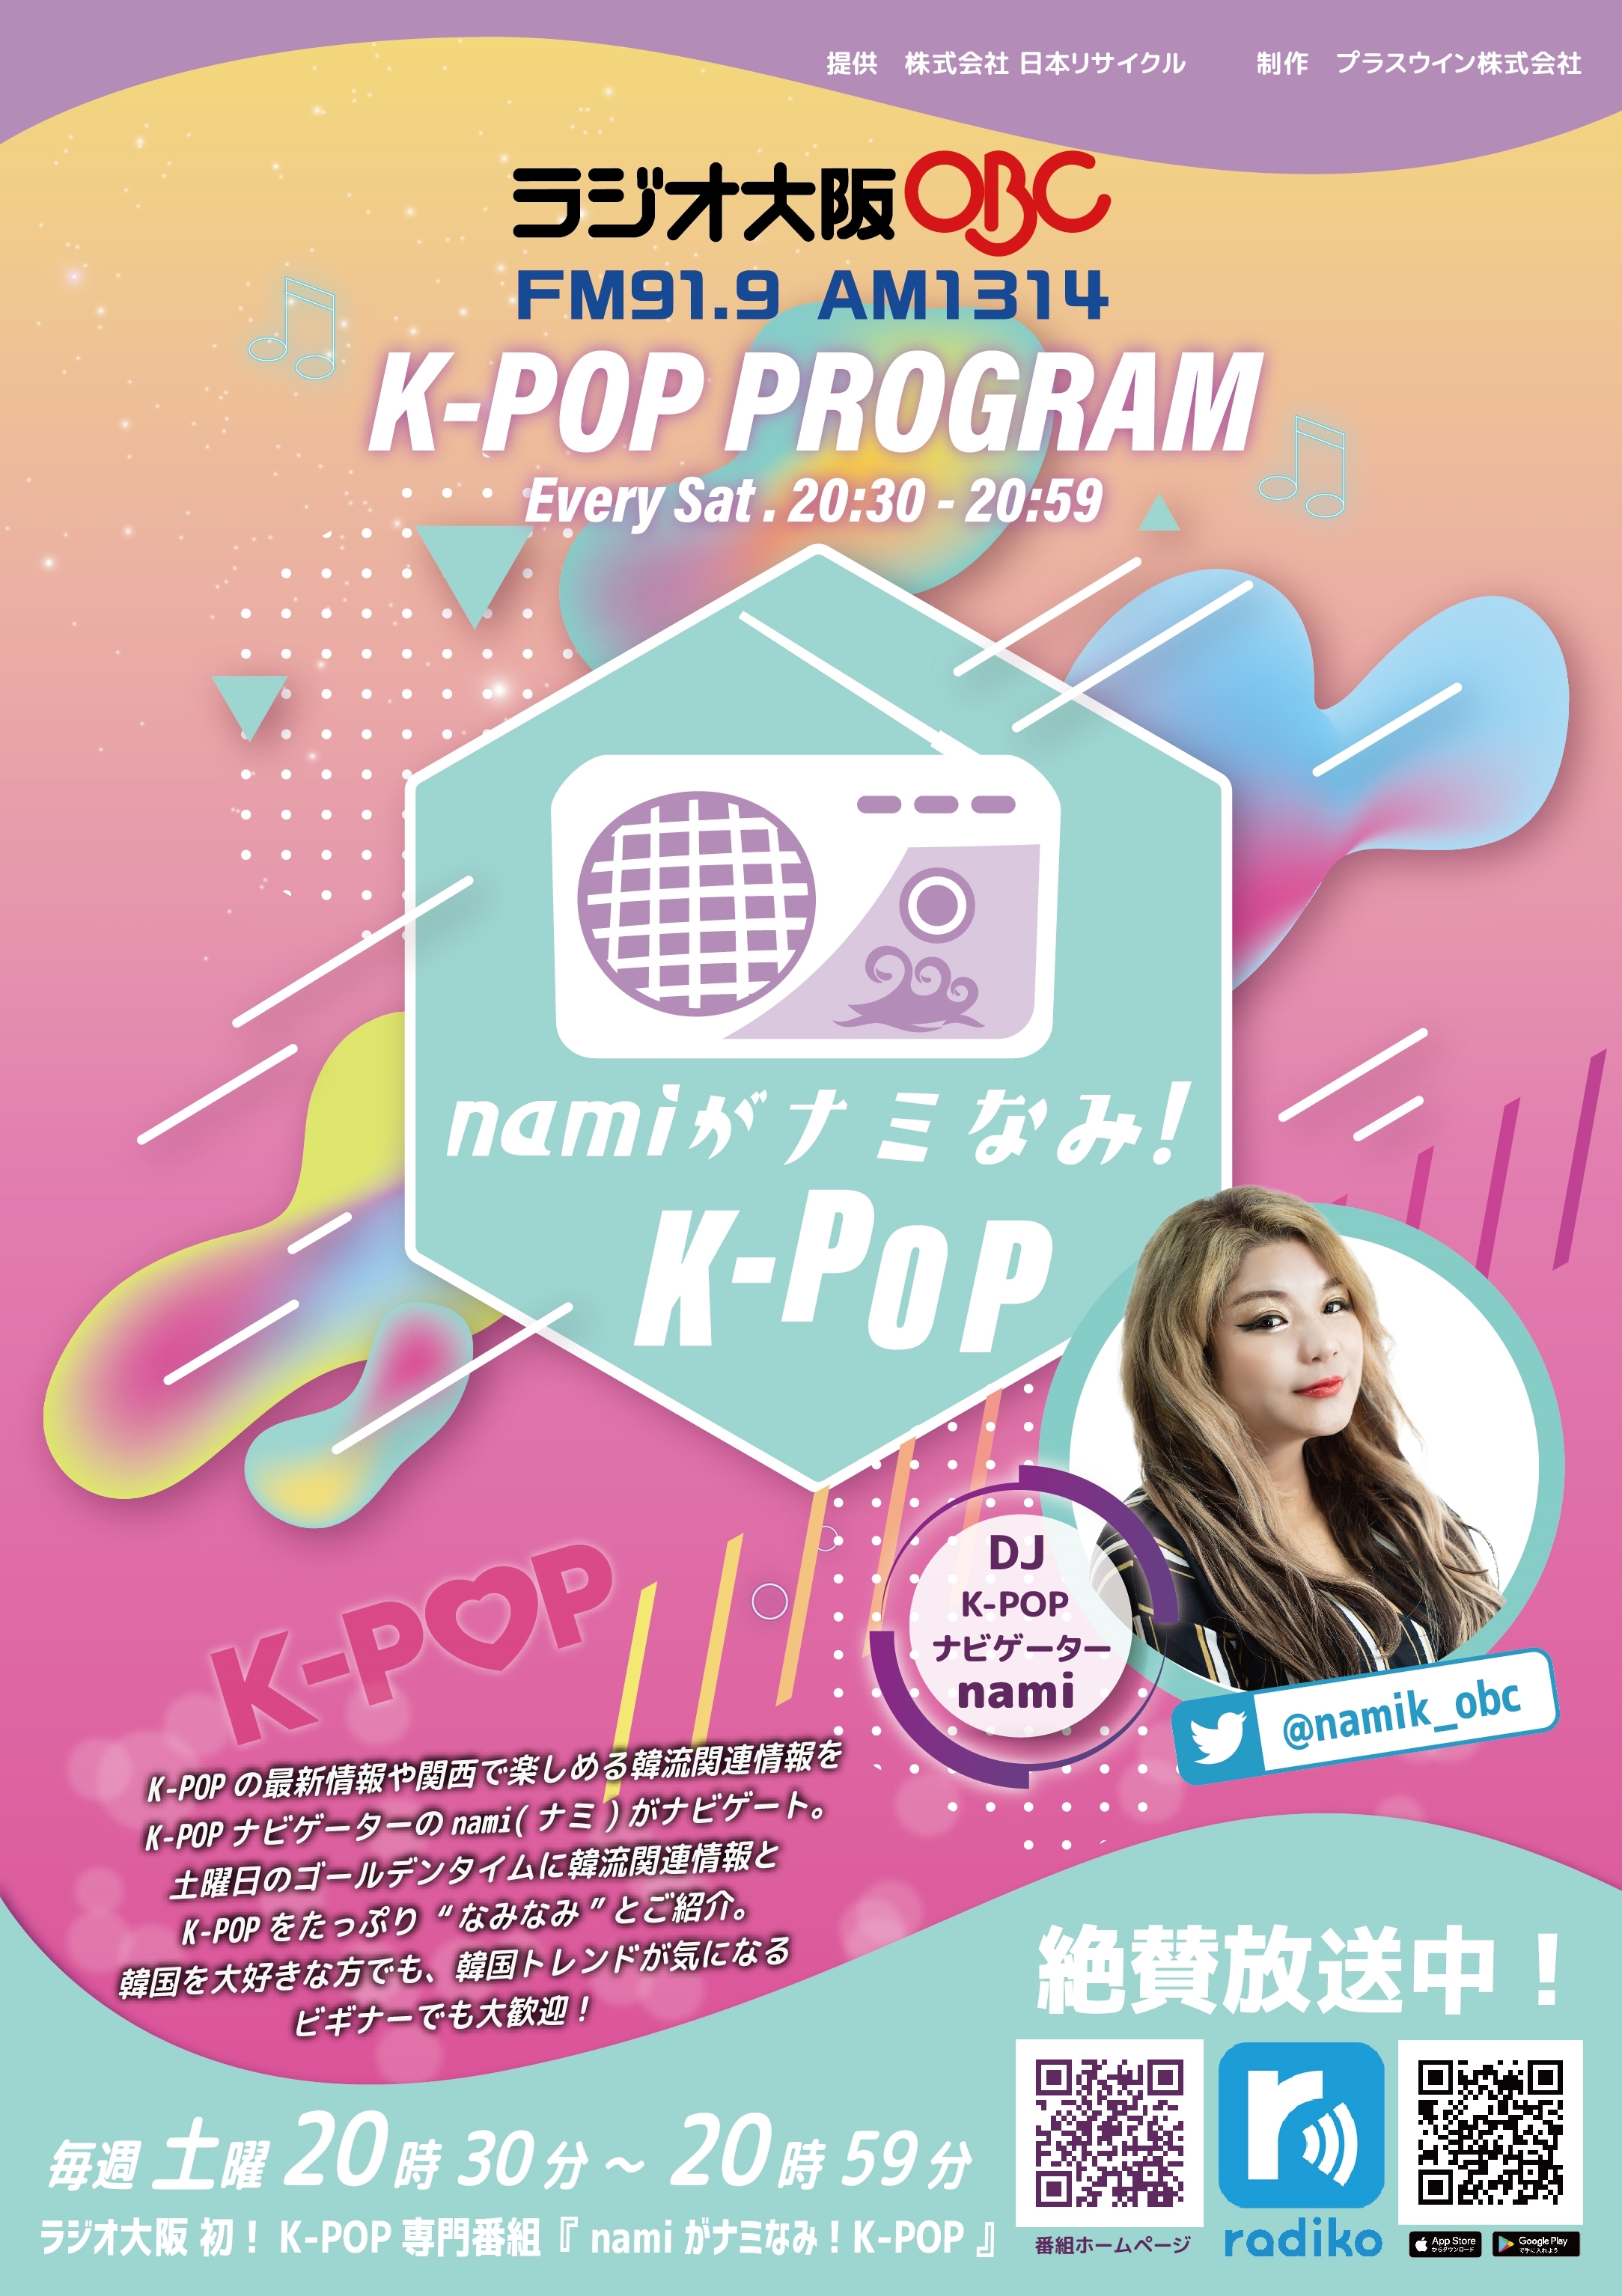 【ラジオ放送告知】ラジオ大阪「namiがナミなみ！K-POP」にて「Fanicon」をご利用いただいているソン・スンヒョンさんのライブレポとコミュニティ情報が紹介されます